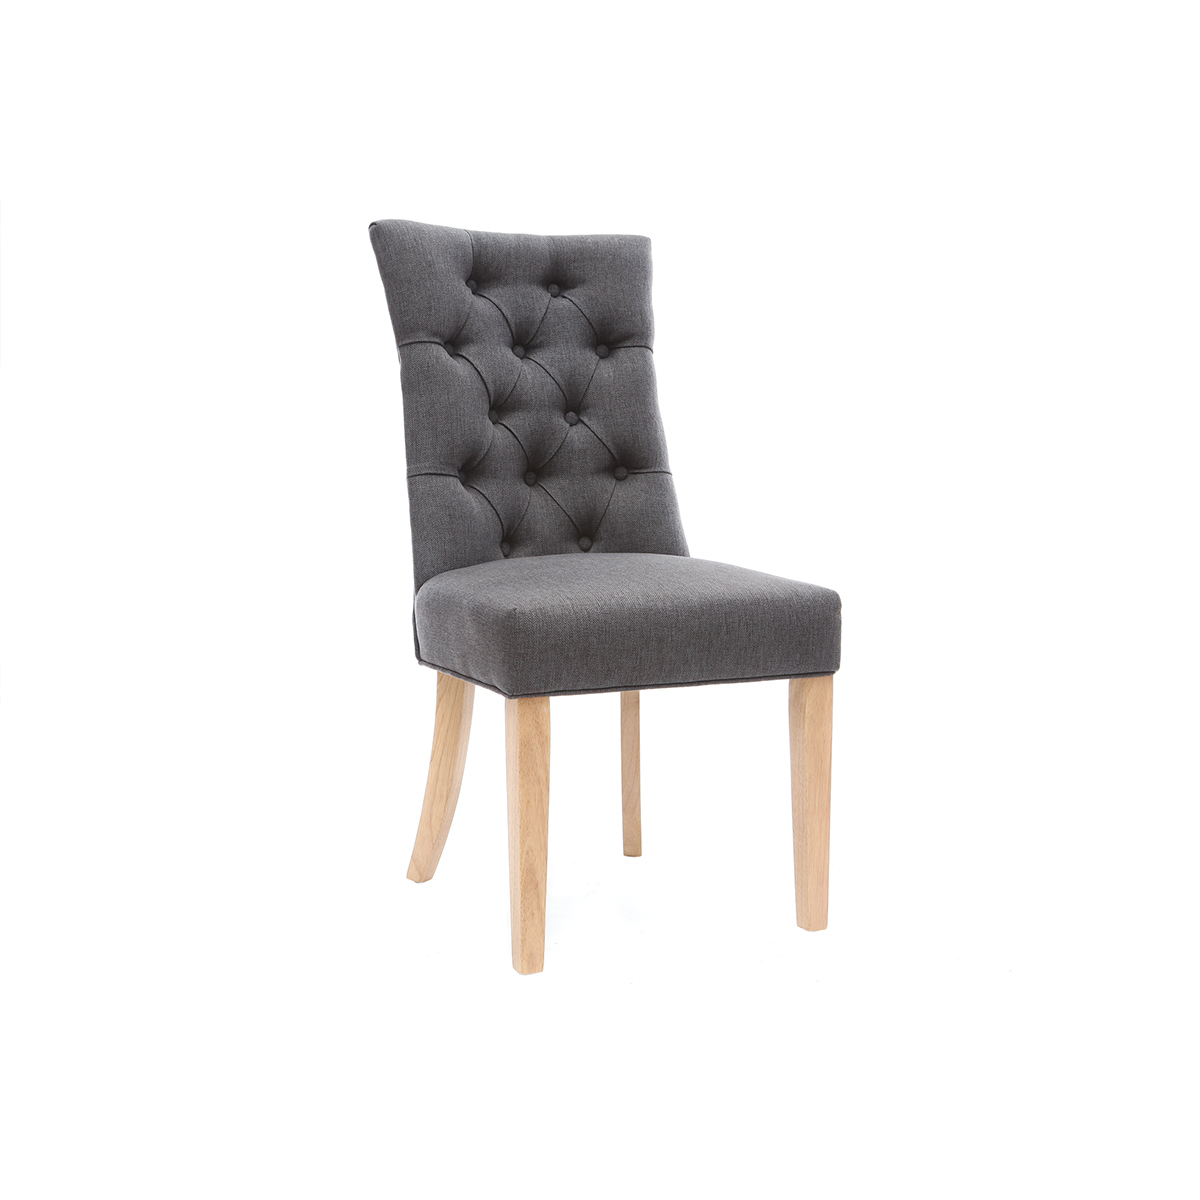 Chaise classique en tissu gris foncé et bois clair massif VOLTAIRE vue1